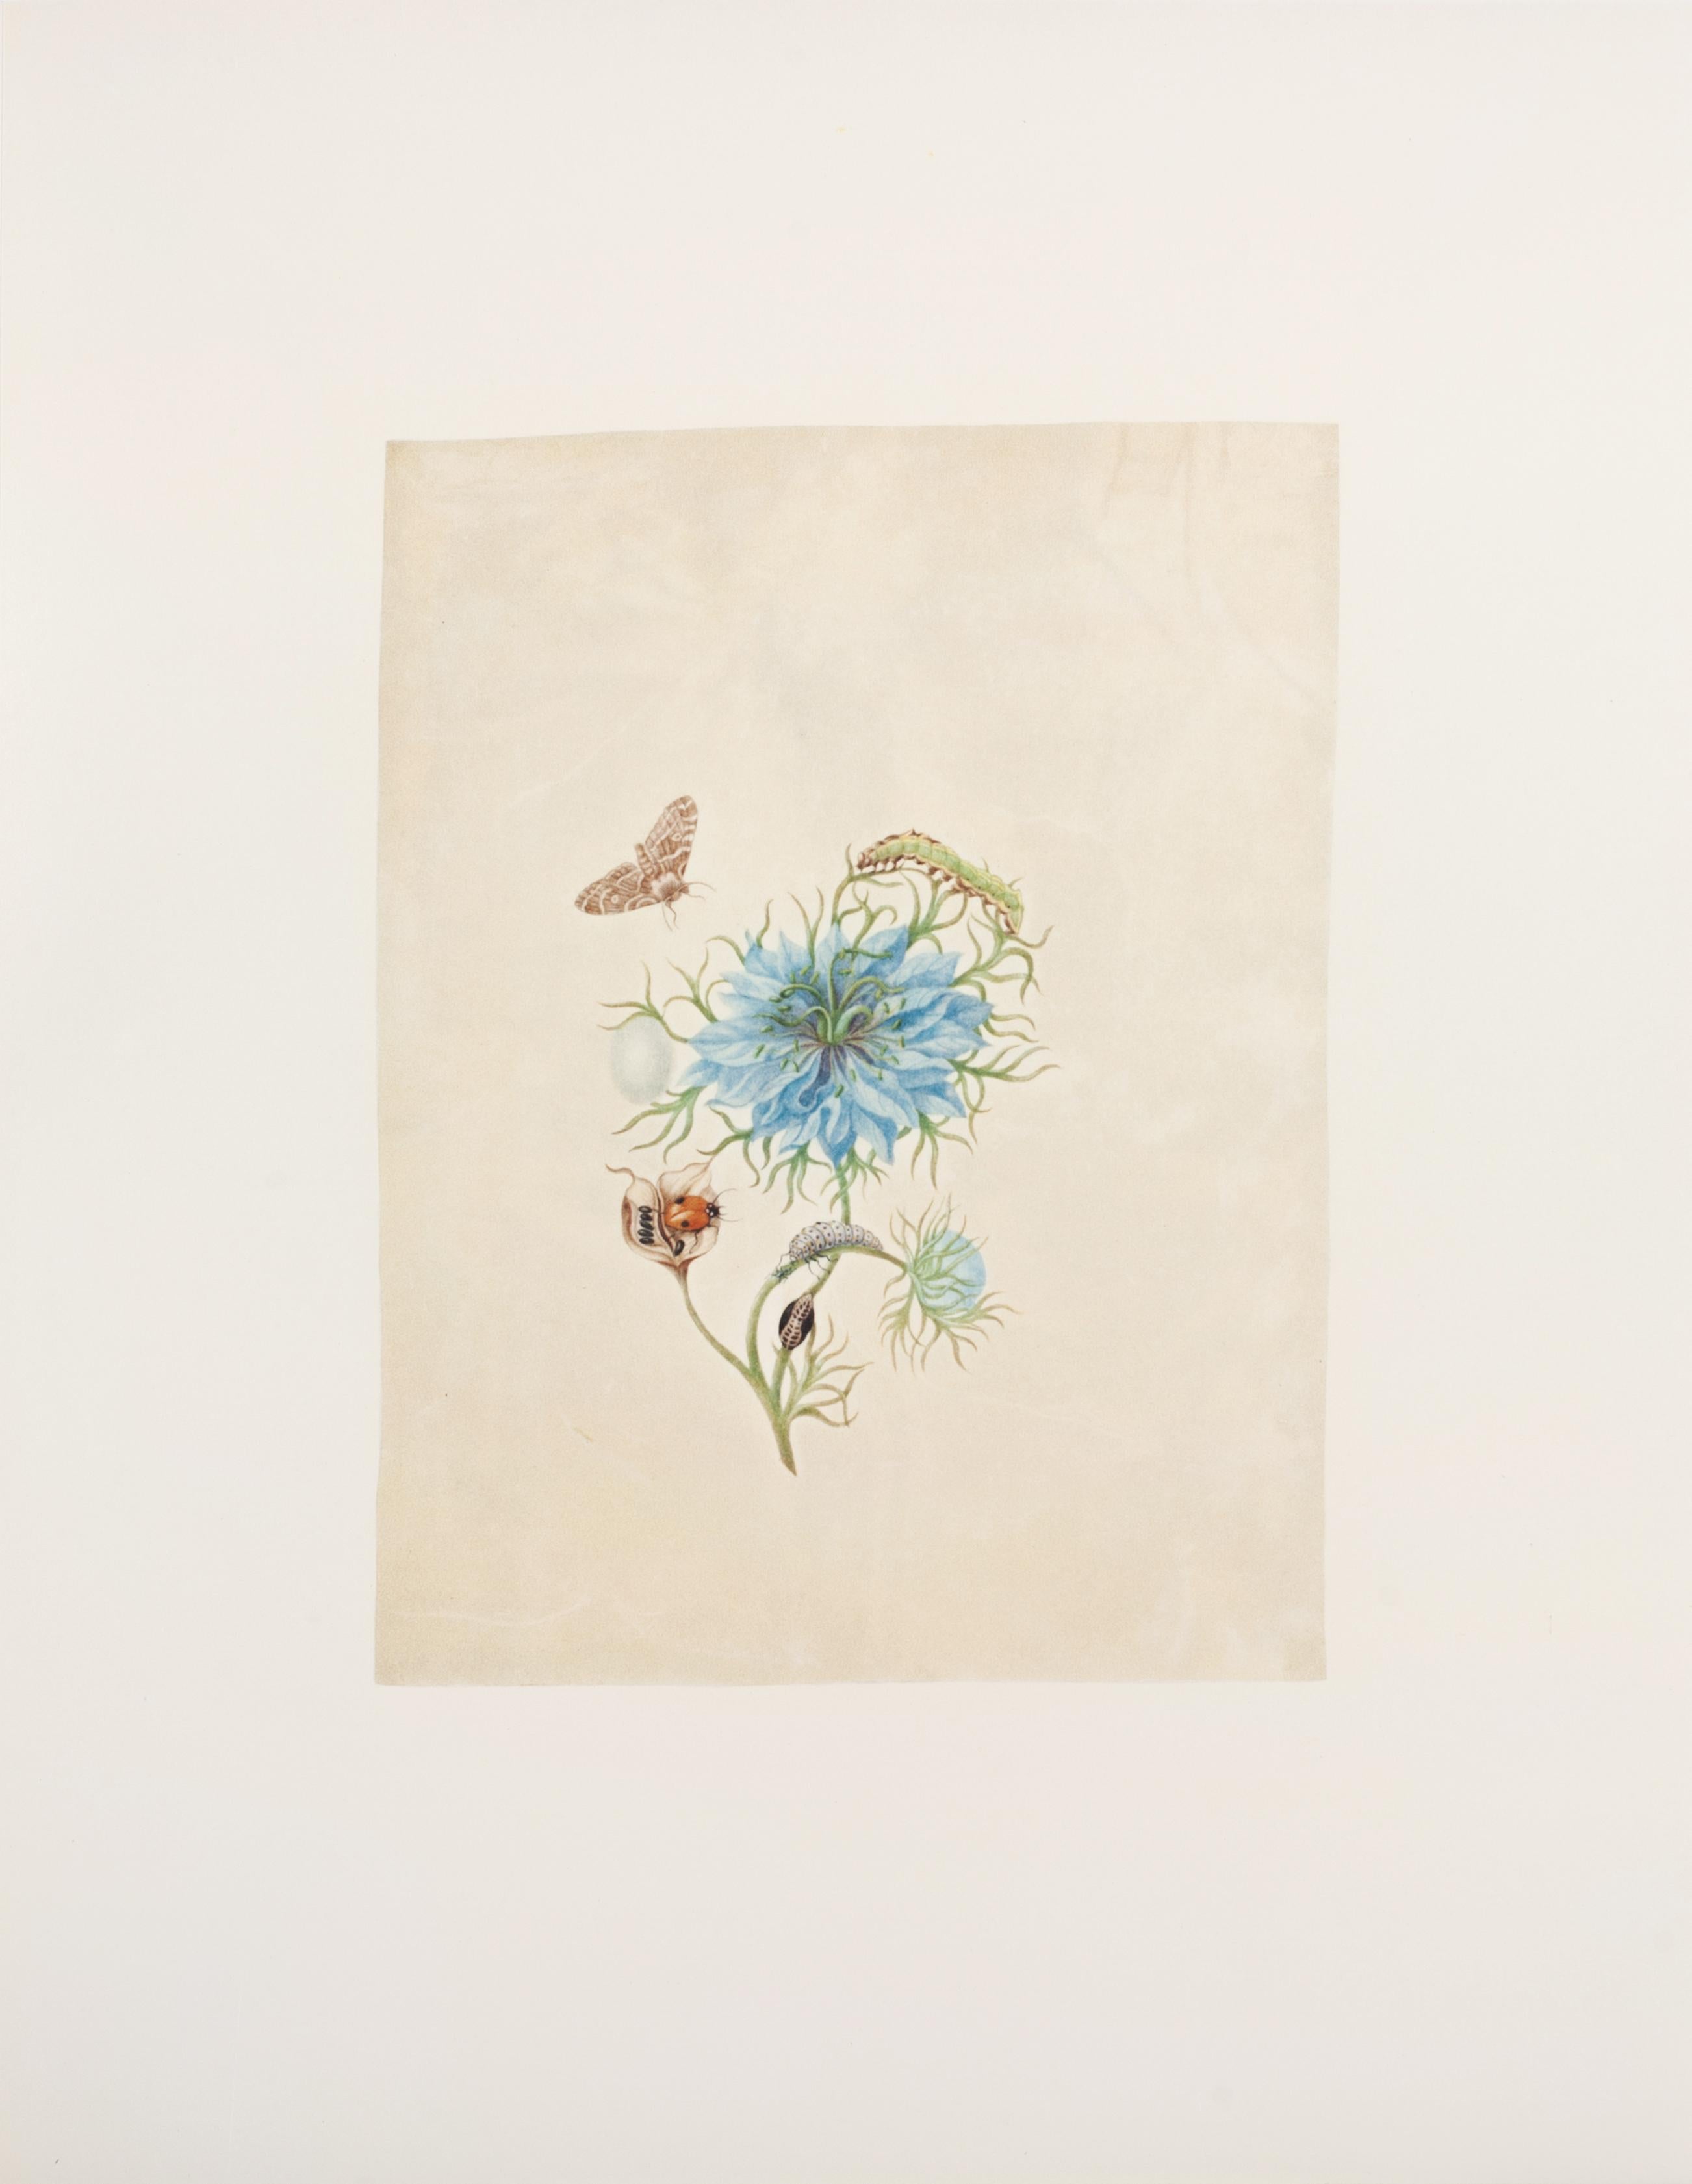 40. Fennel-Blume, Eisen, bedeutend – Print von Maria Sybilla Merian